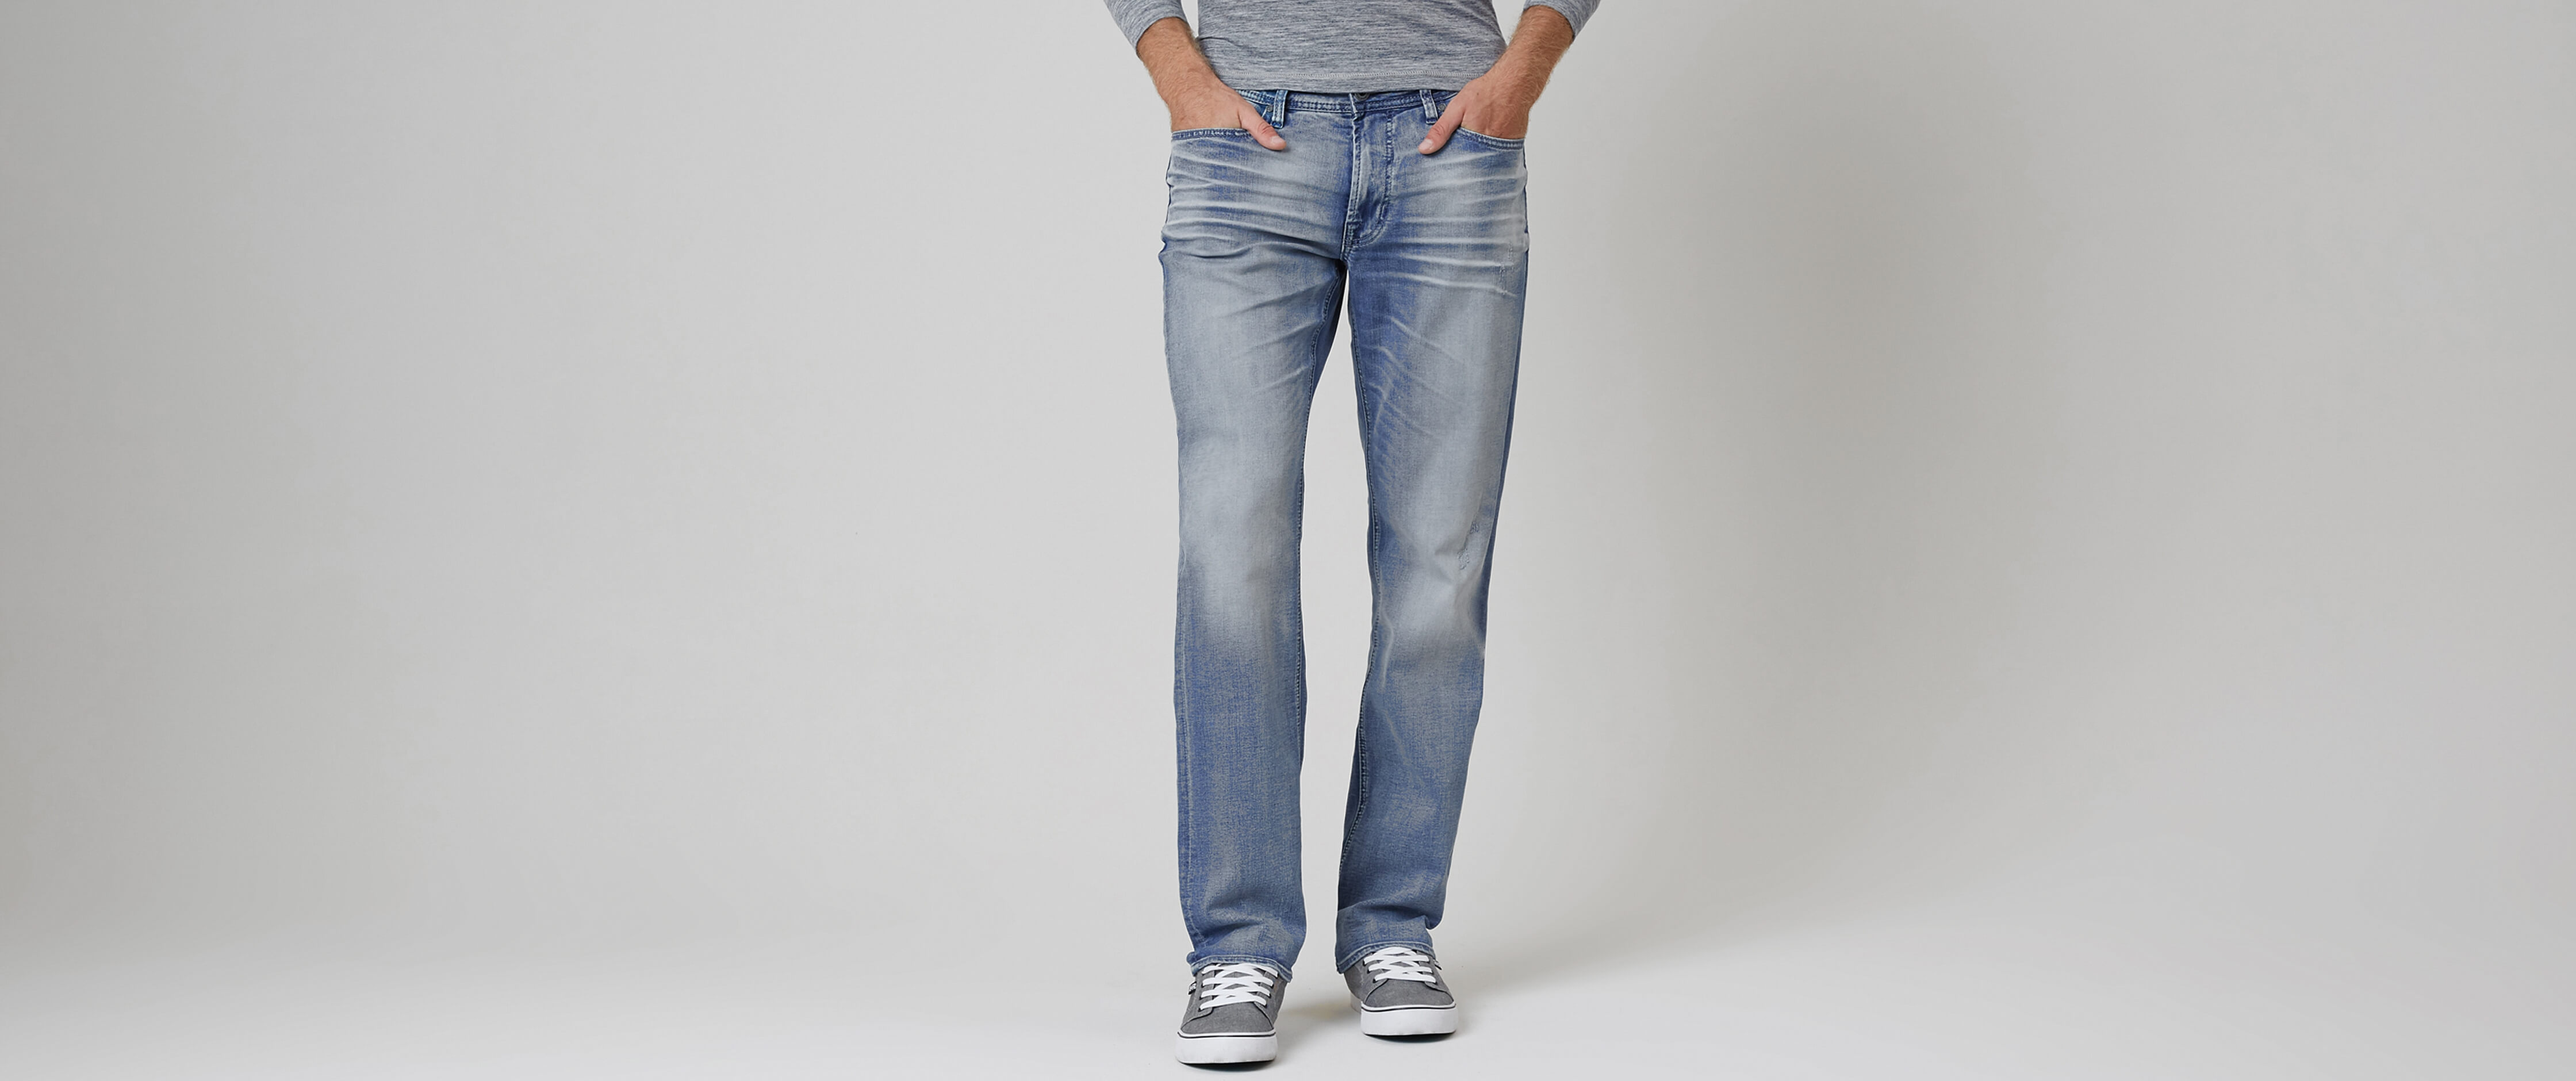 departwest seeker jeans